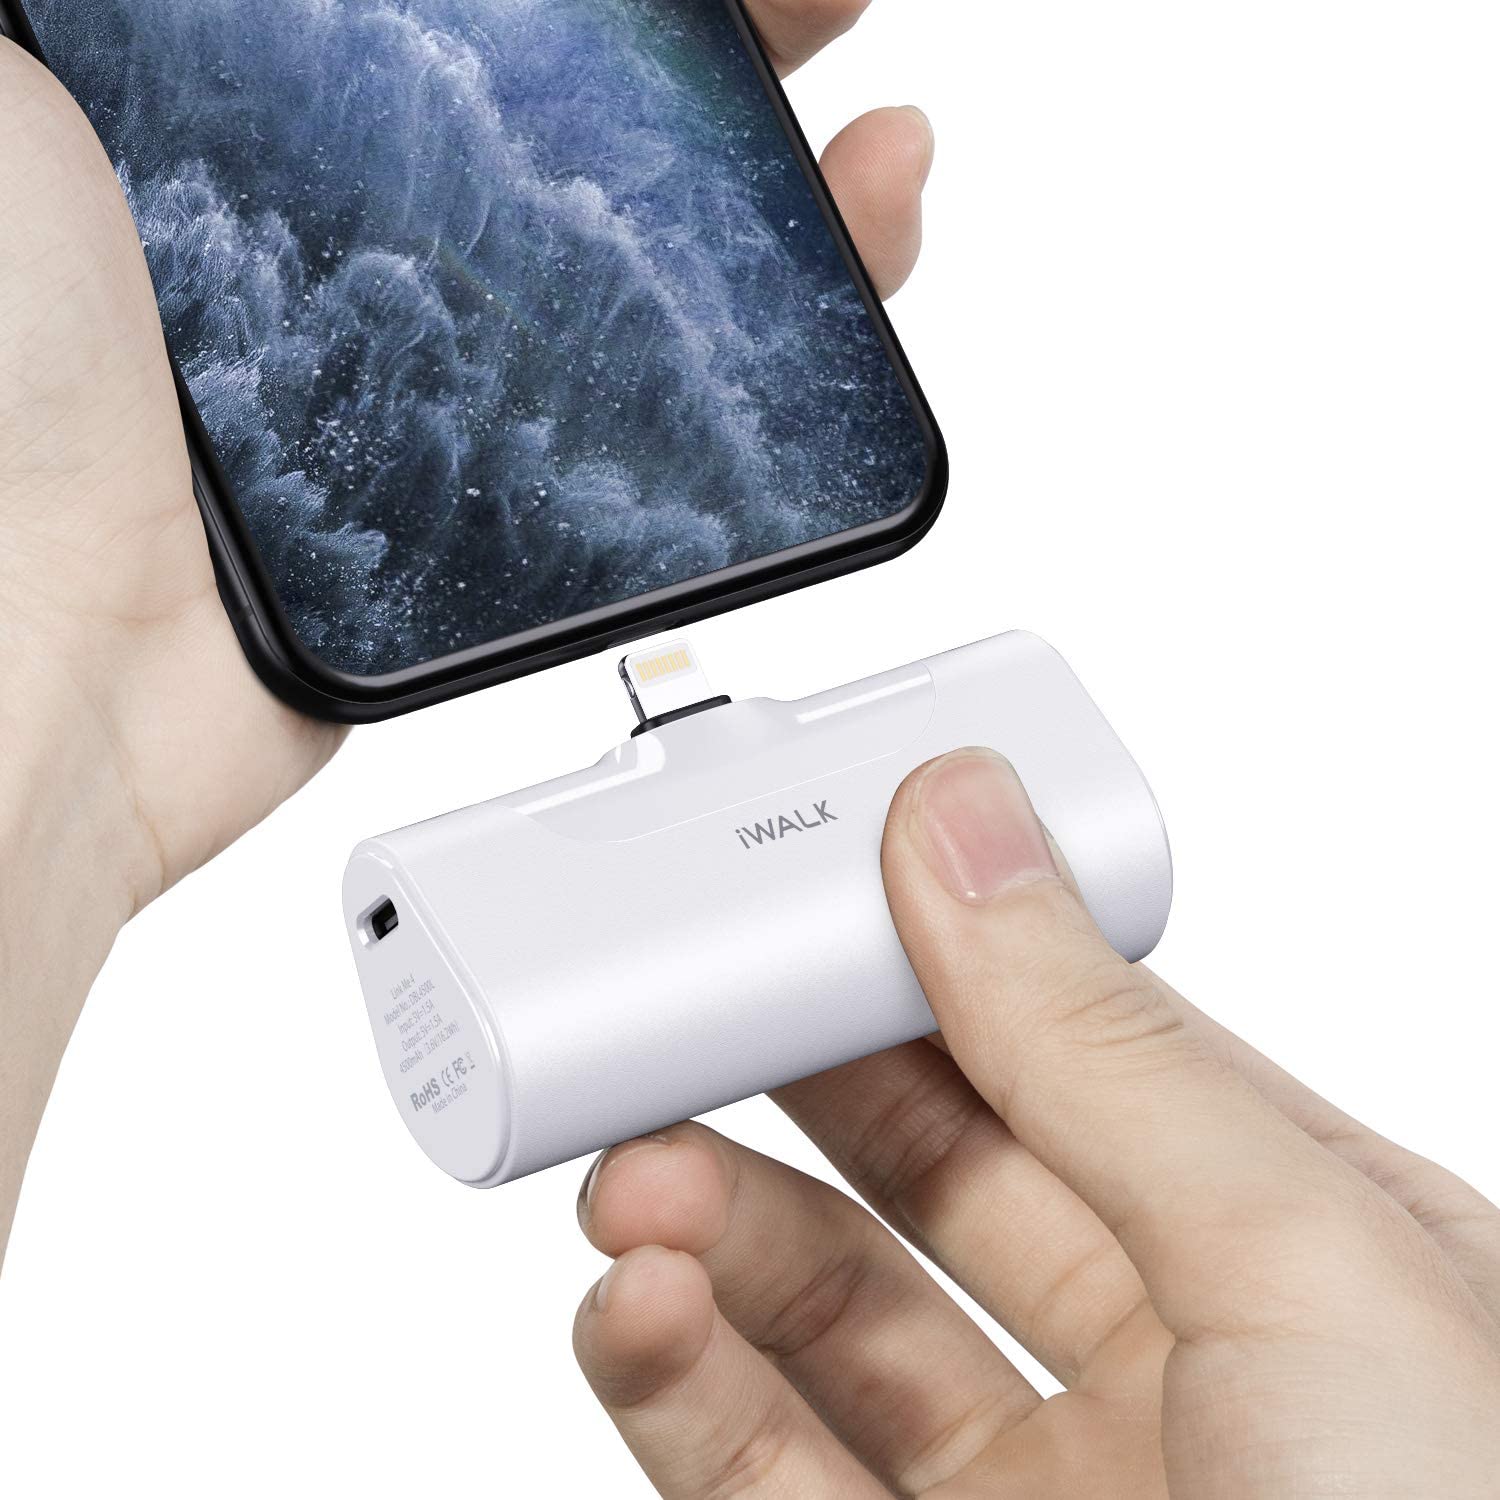 ワイヤレス充電器 iWALK 超小型 iphone 4500mAh Lightning SALE 60%OFF コネクター内蔵 iPhone 用 充電 充電対応 コードレス 定番 軽量 素晴らしい外見